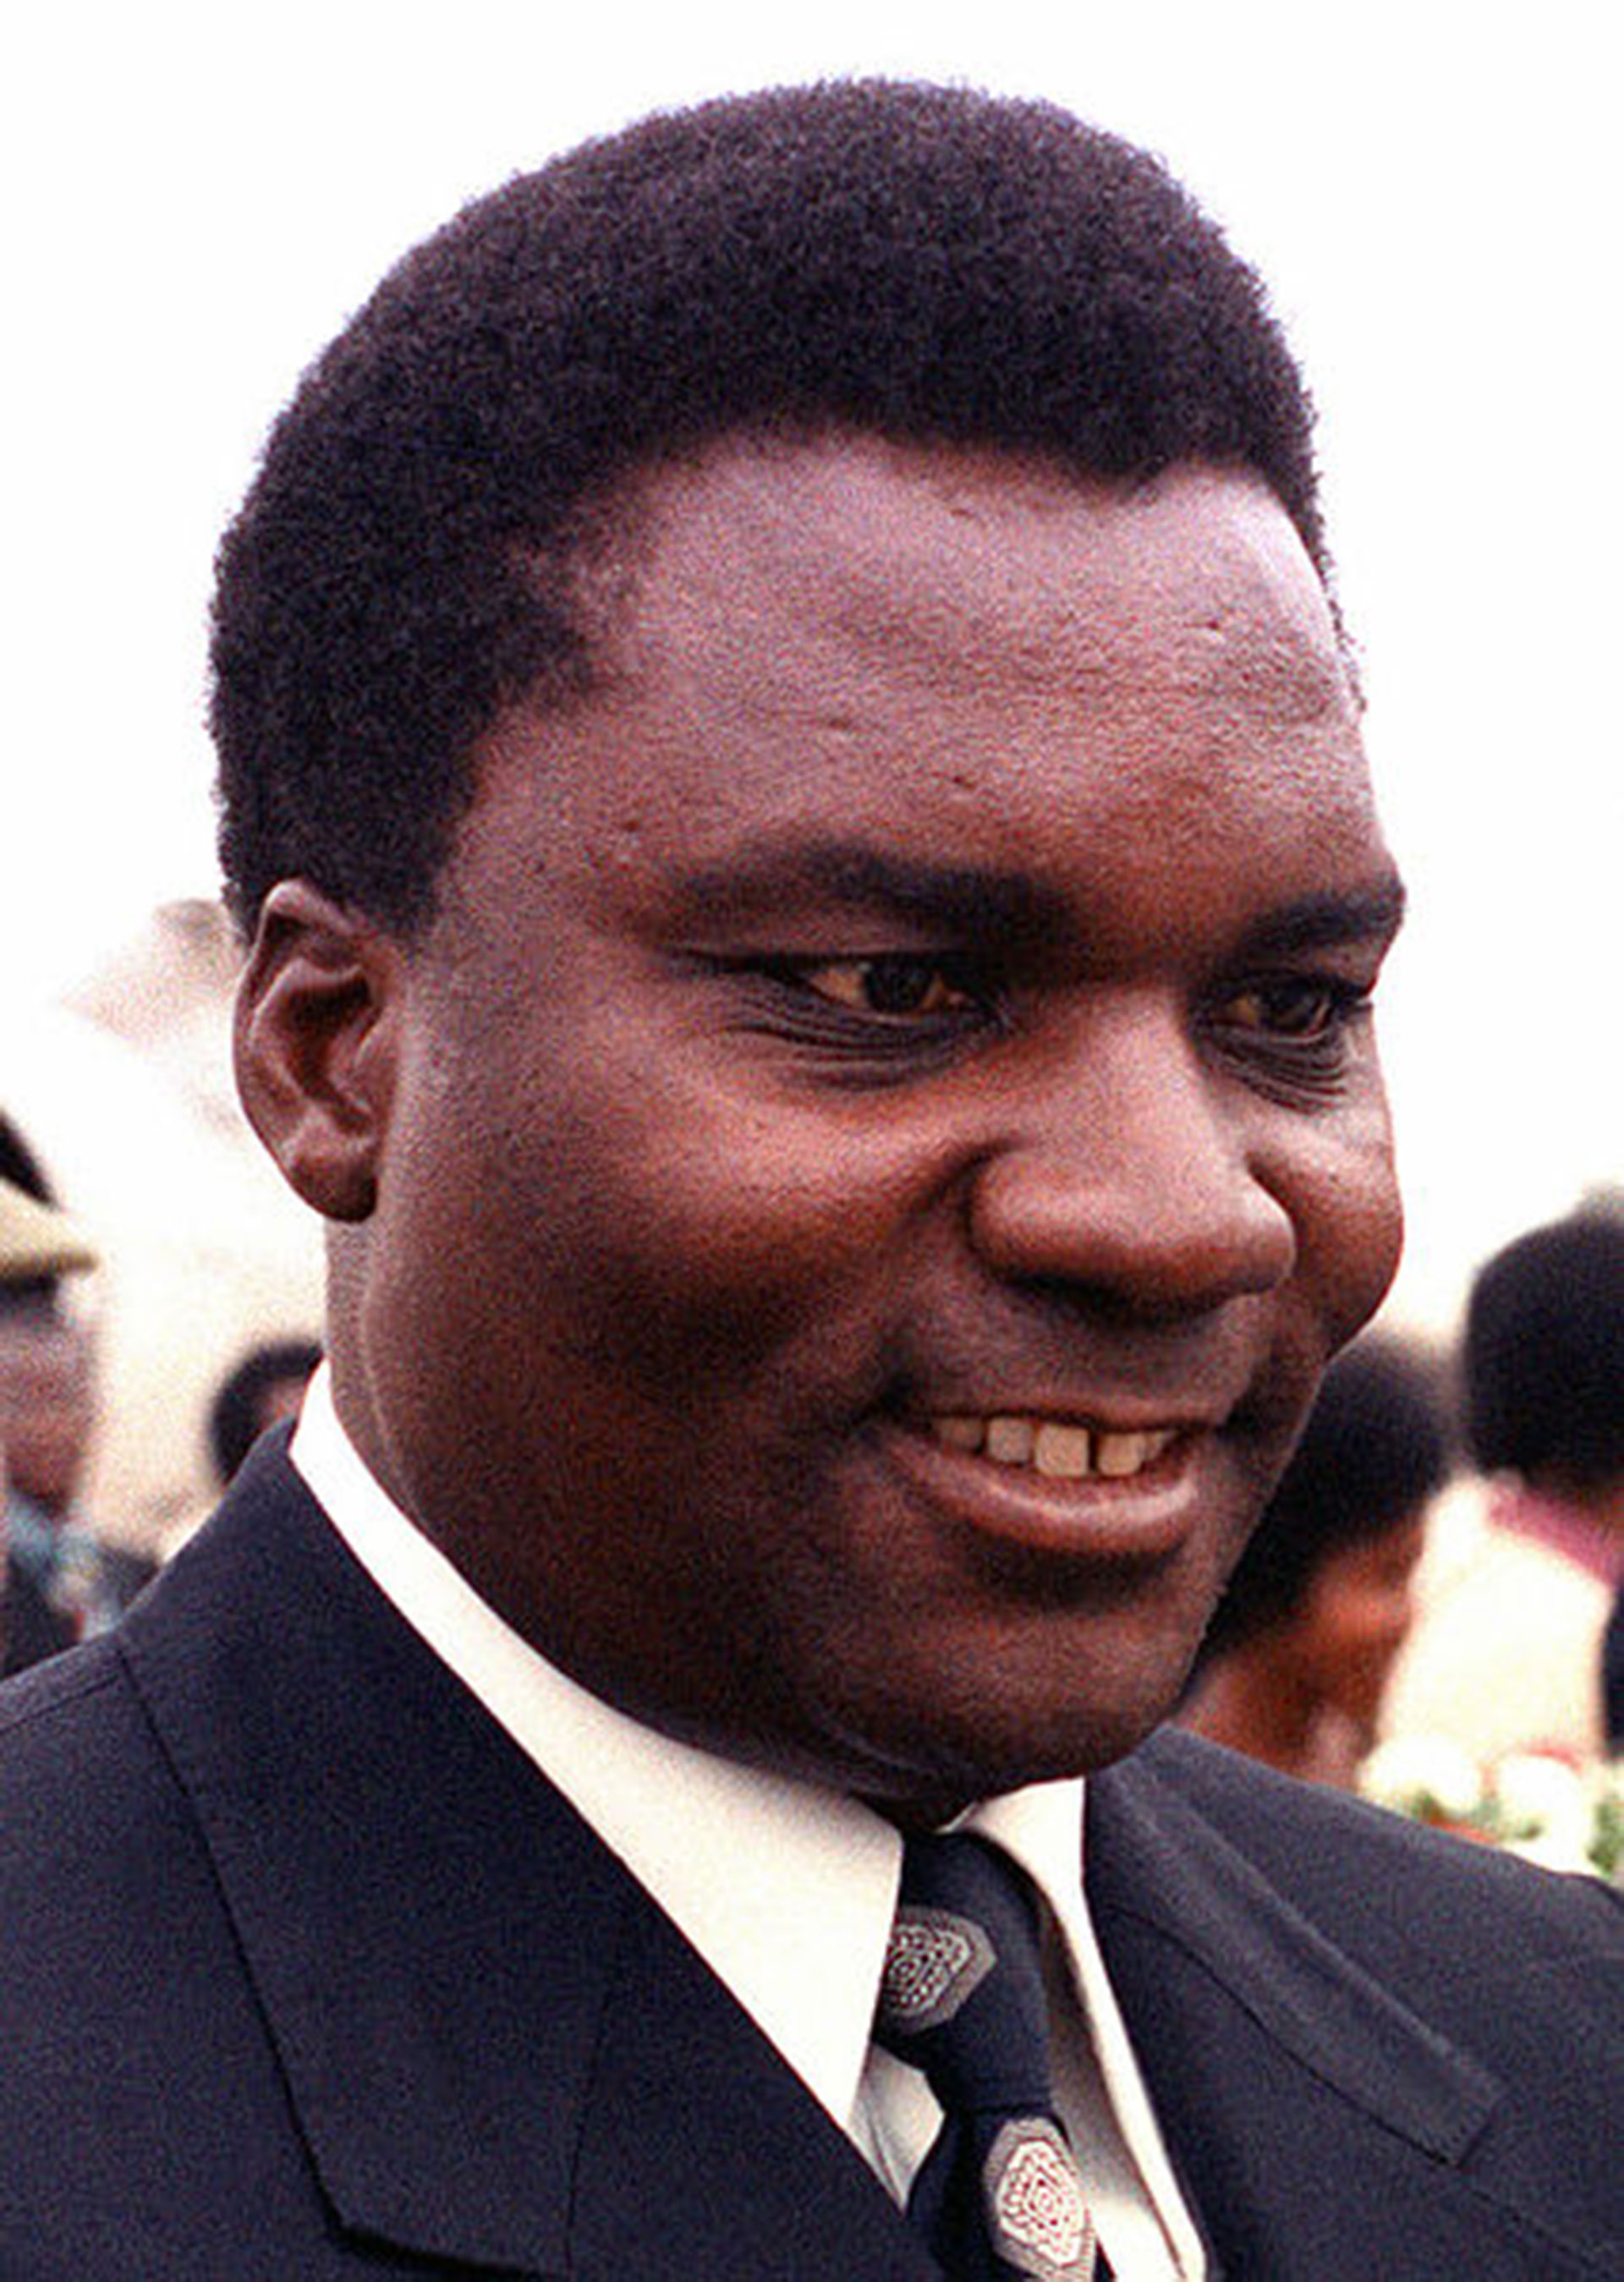 Juvénal Habyarimana, dictador de Ruanda entre 1973 y 1994